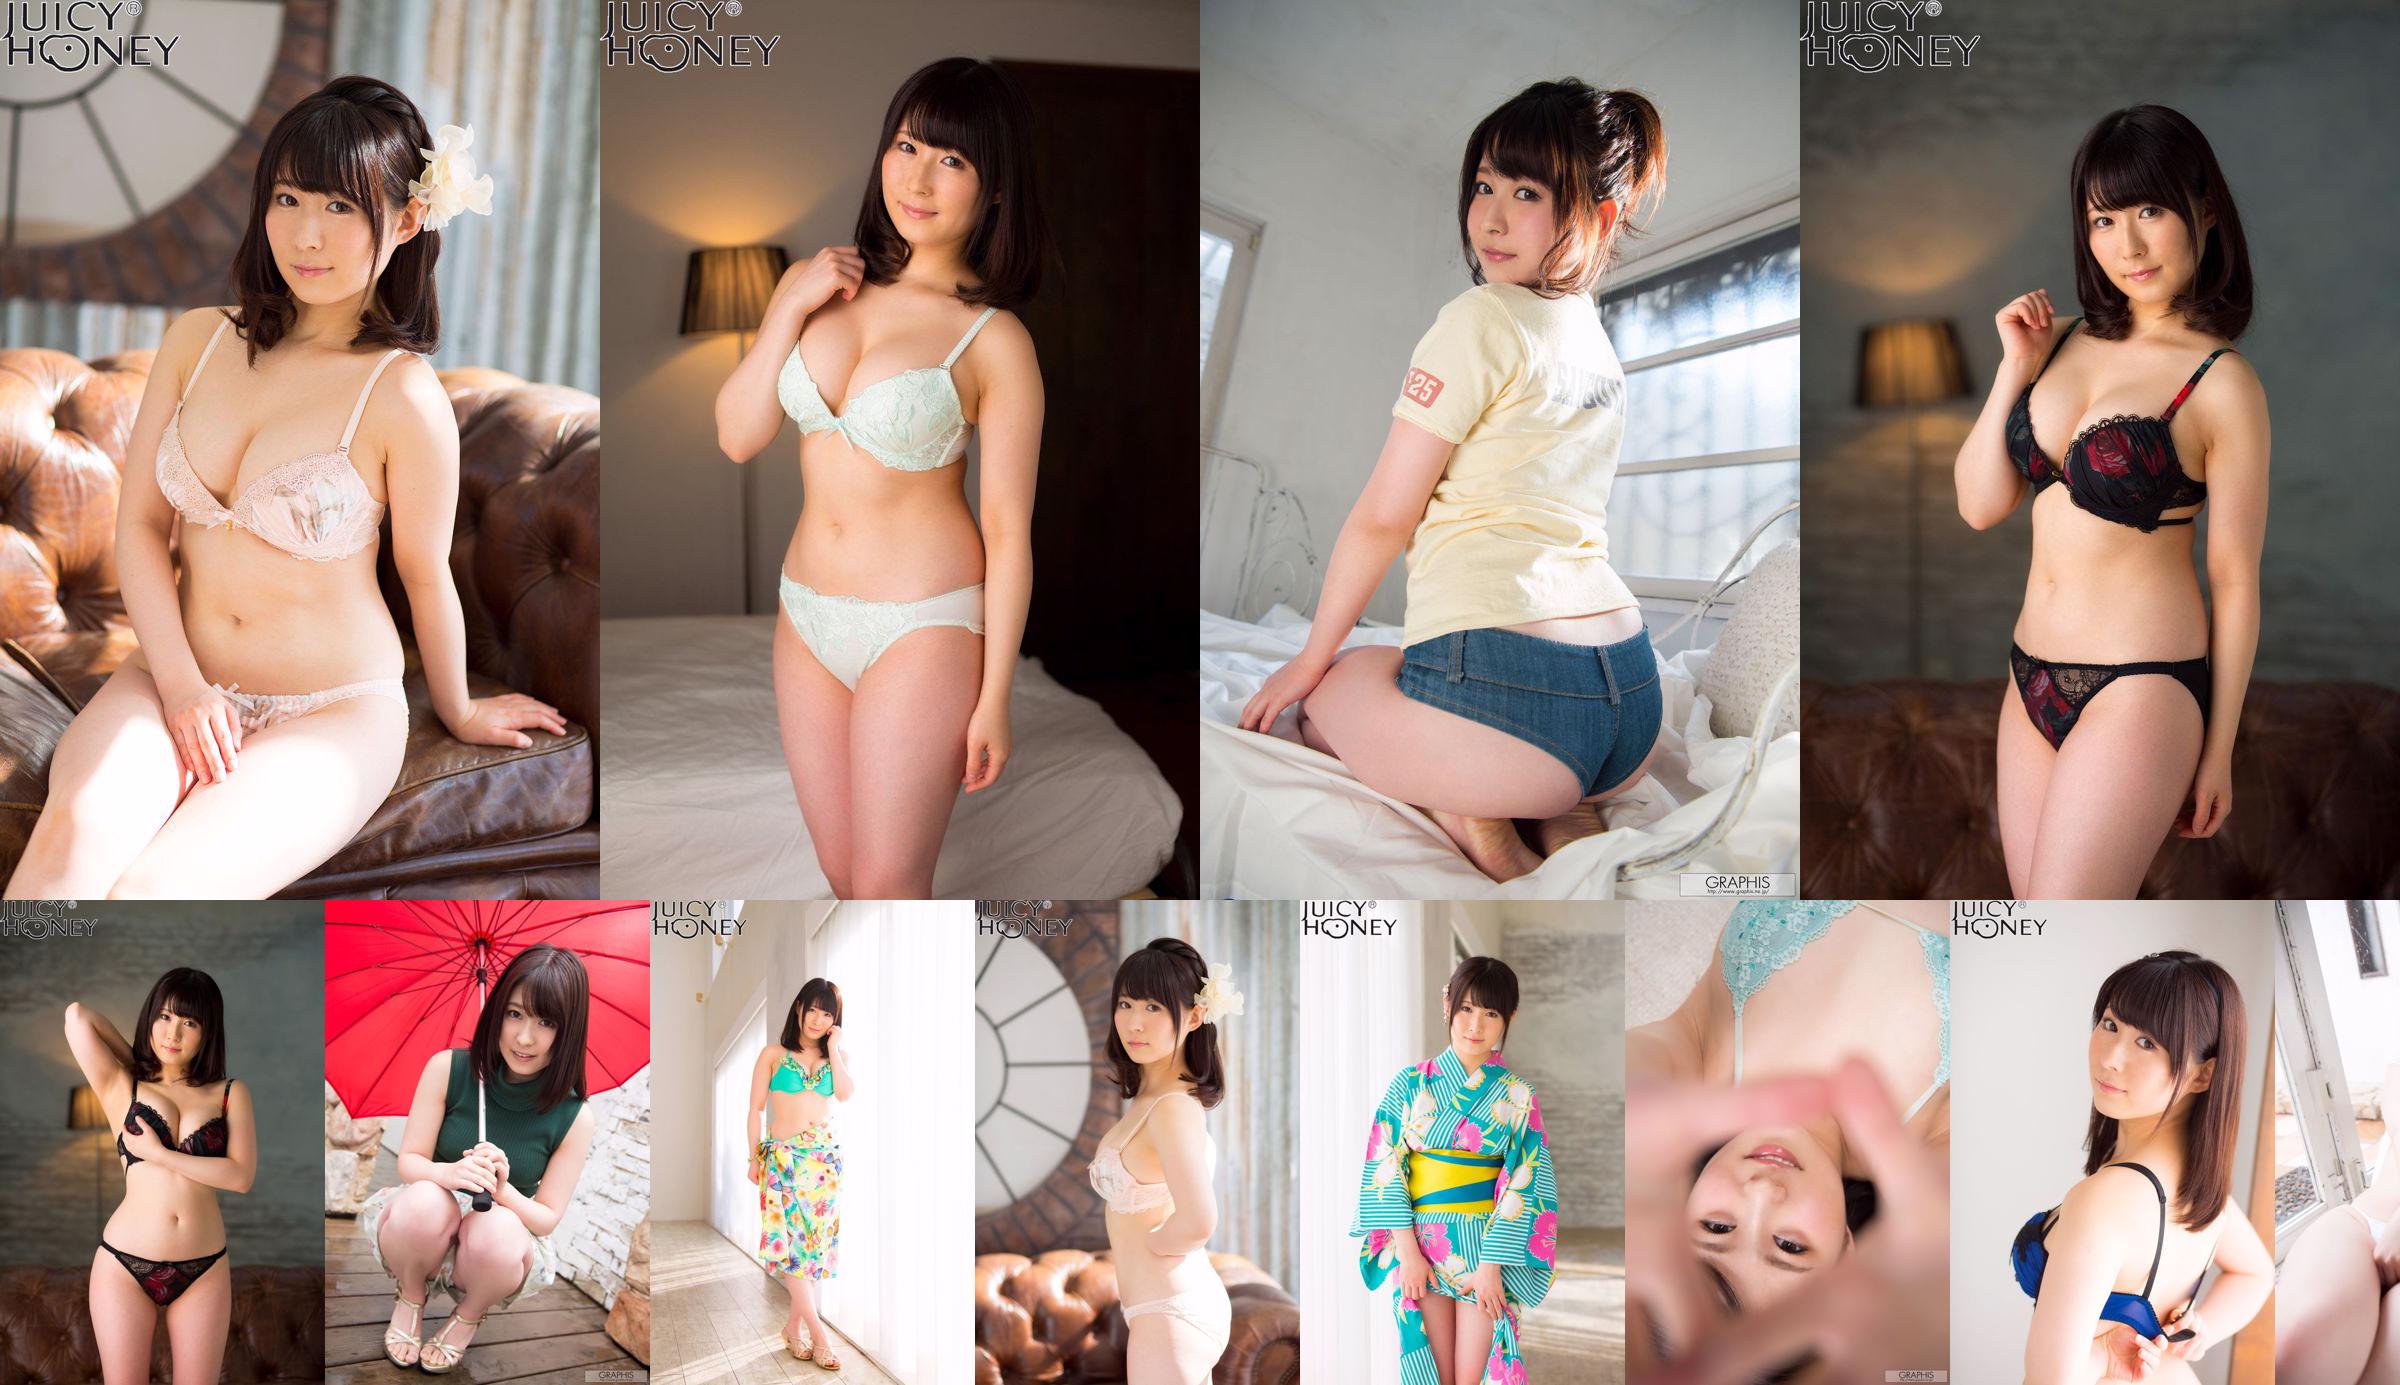 [X-City] Juicy Honey jh216 Asuka りん Rin Asuka No.c1dfab Page 3